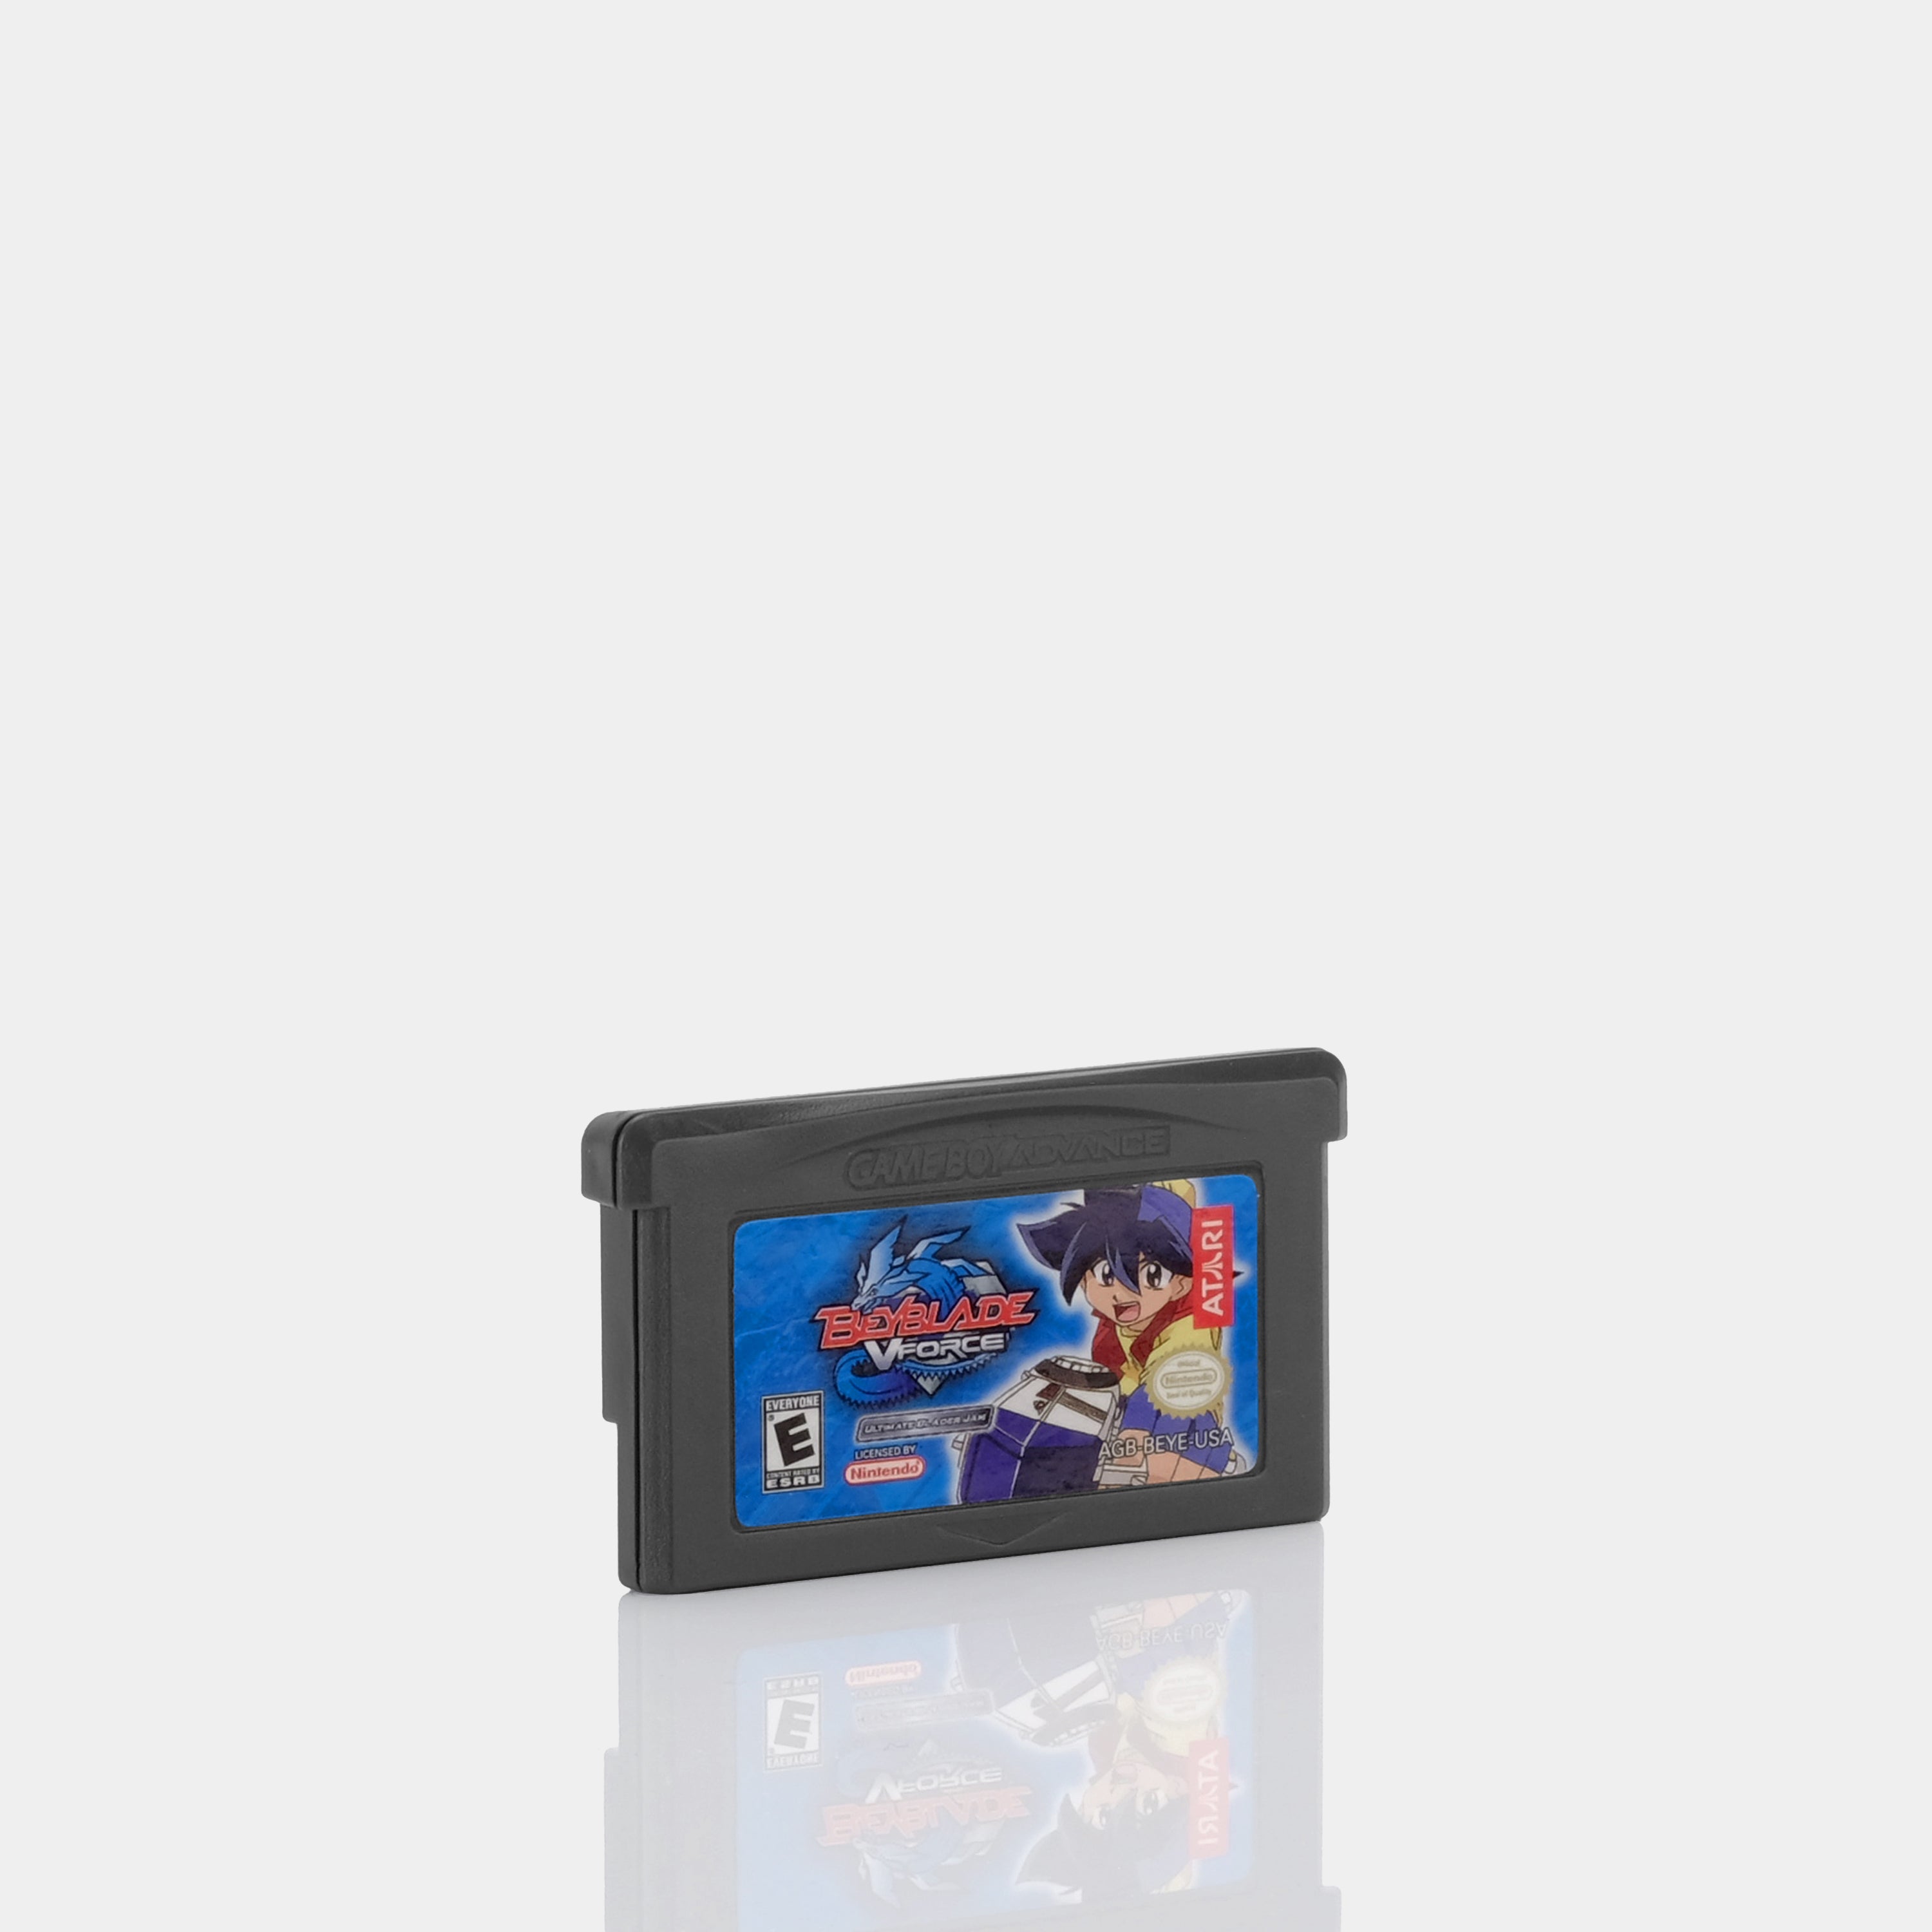 Beyblade VForce: Ultimate Blader Jam Game Boy Advance Game